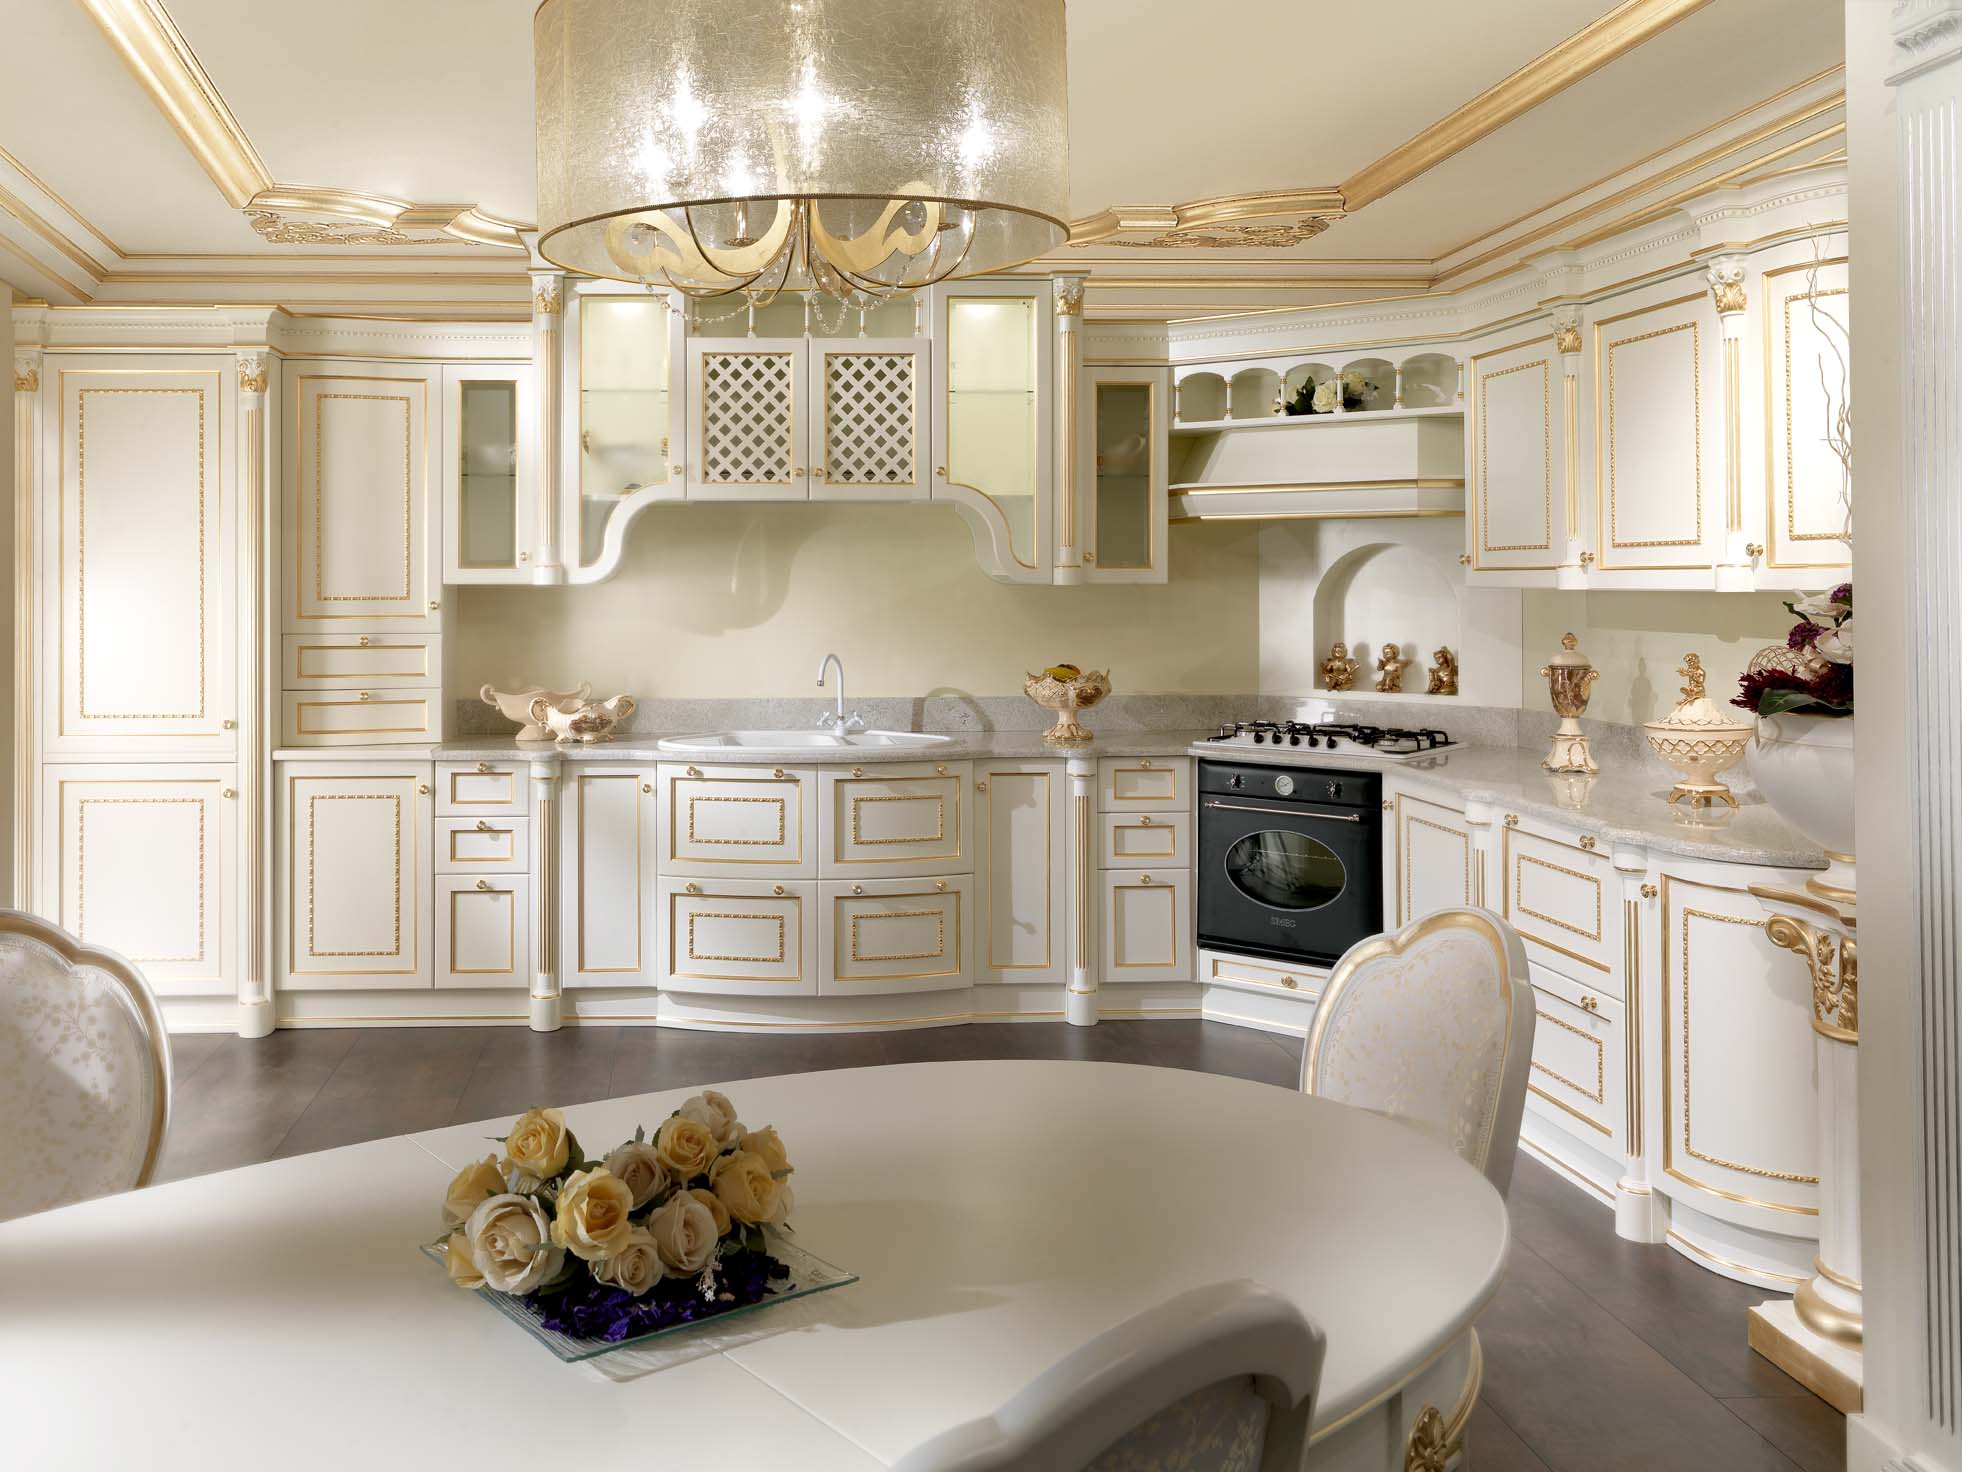 Intérieur de cuisine blanc avec détails dorés.